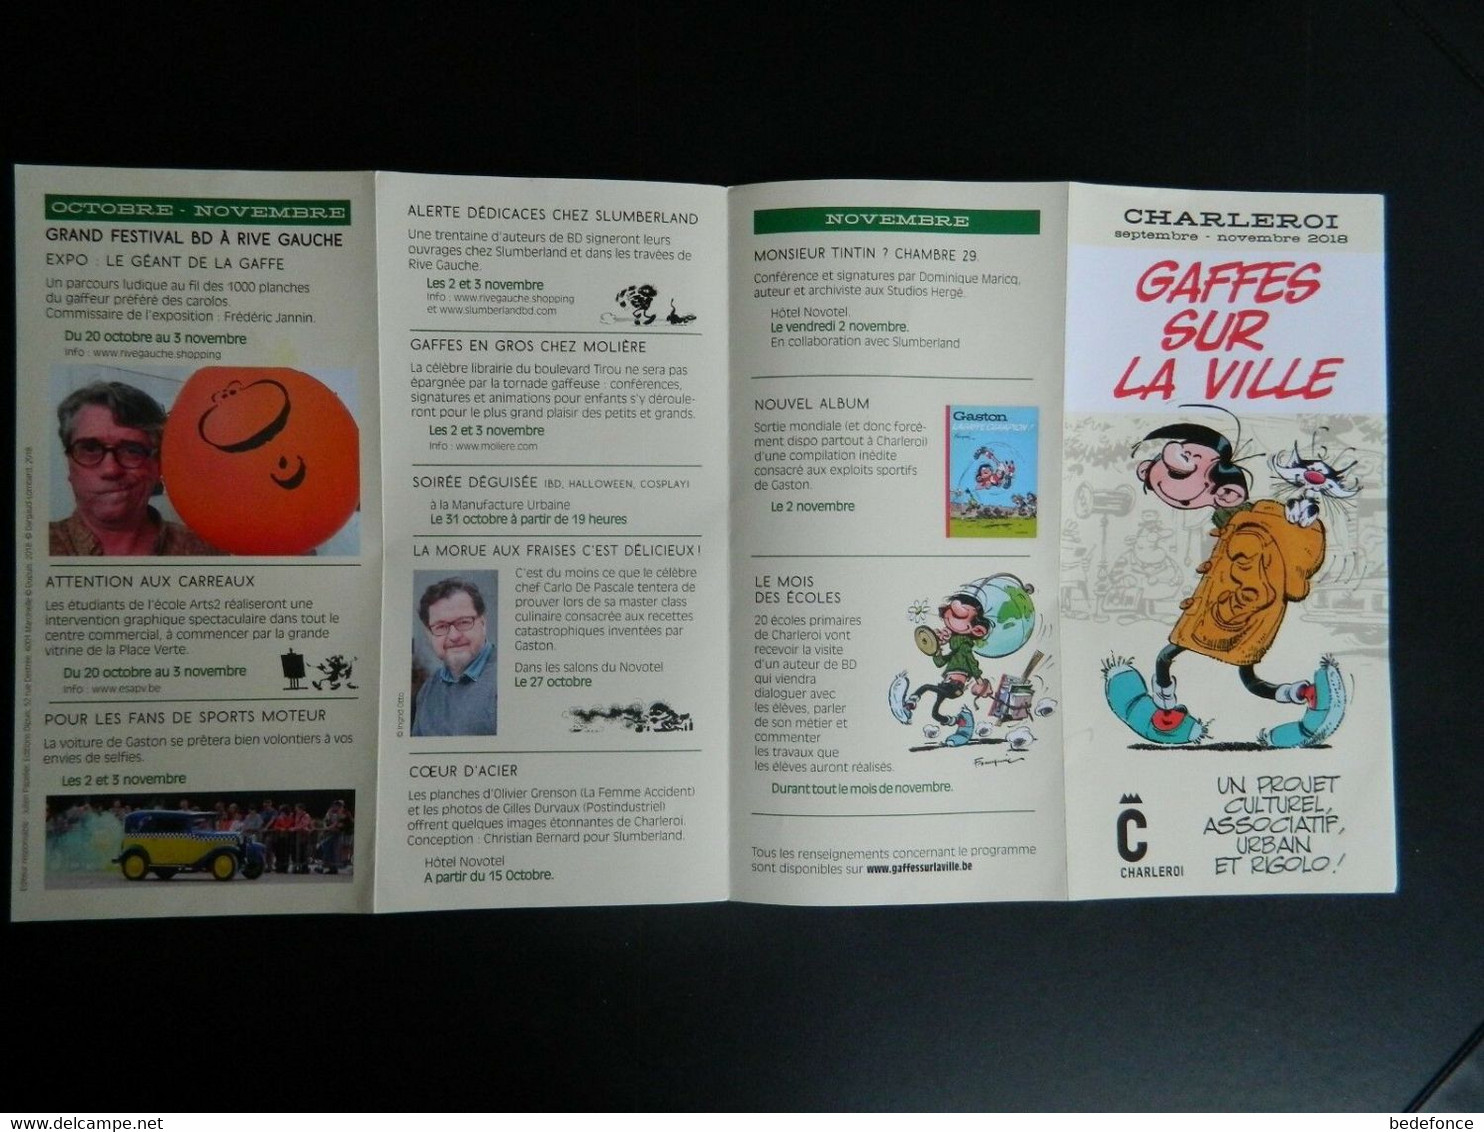 Gaston - Gaffes Sur La Ville - Charleroi Septembre - Novembre 2018 - Folder - Affiches & Offsets